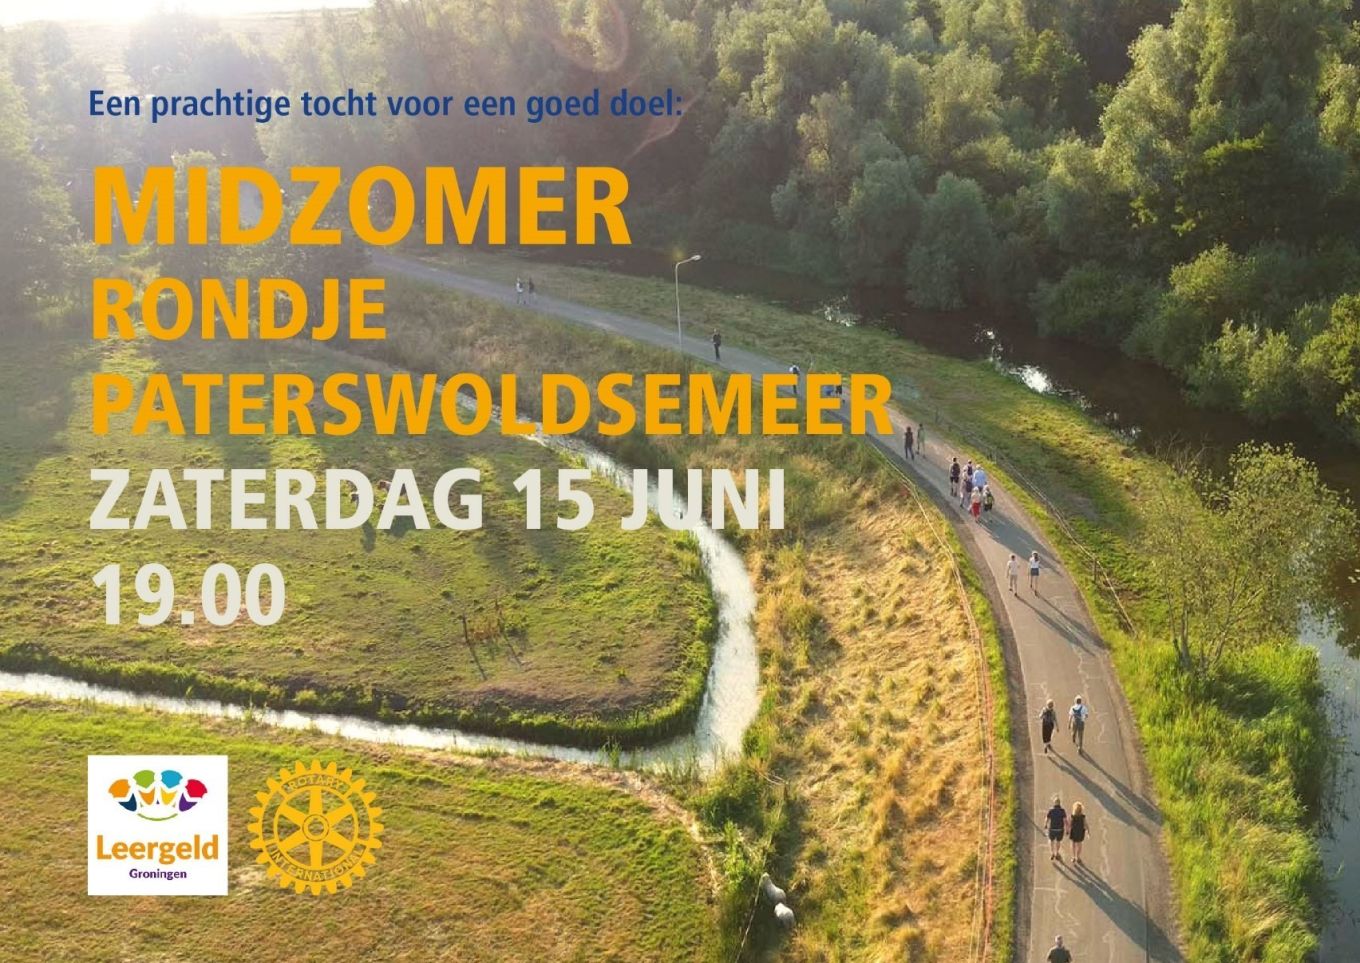 Rotary Groningen-Oost organiseert 11 km wandeltocht voor Leergeld